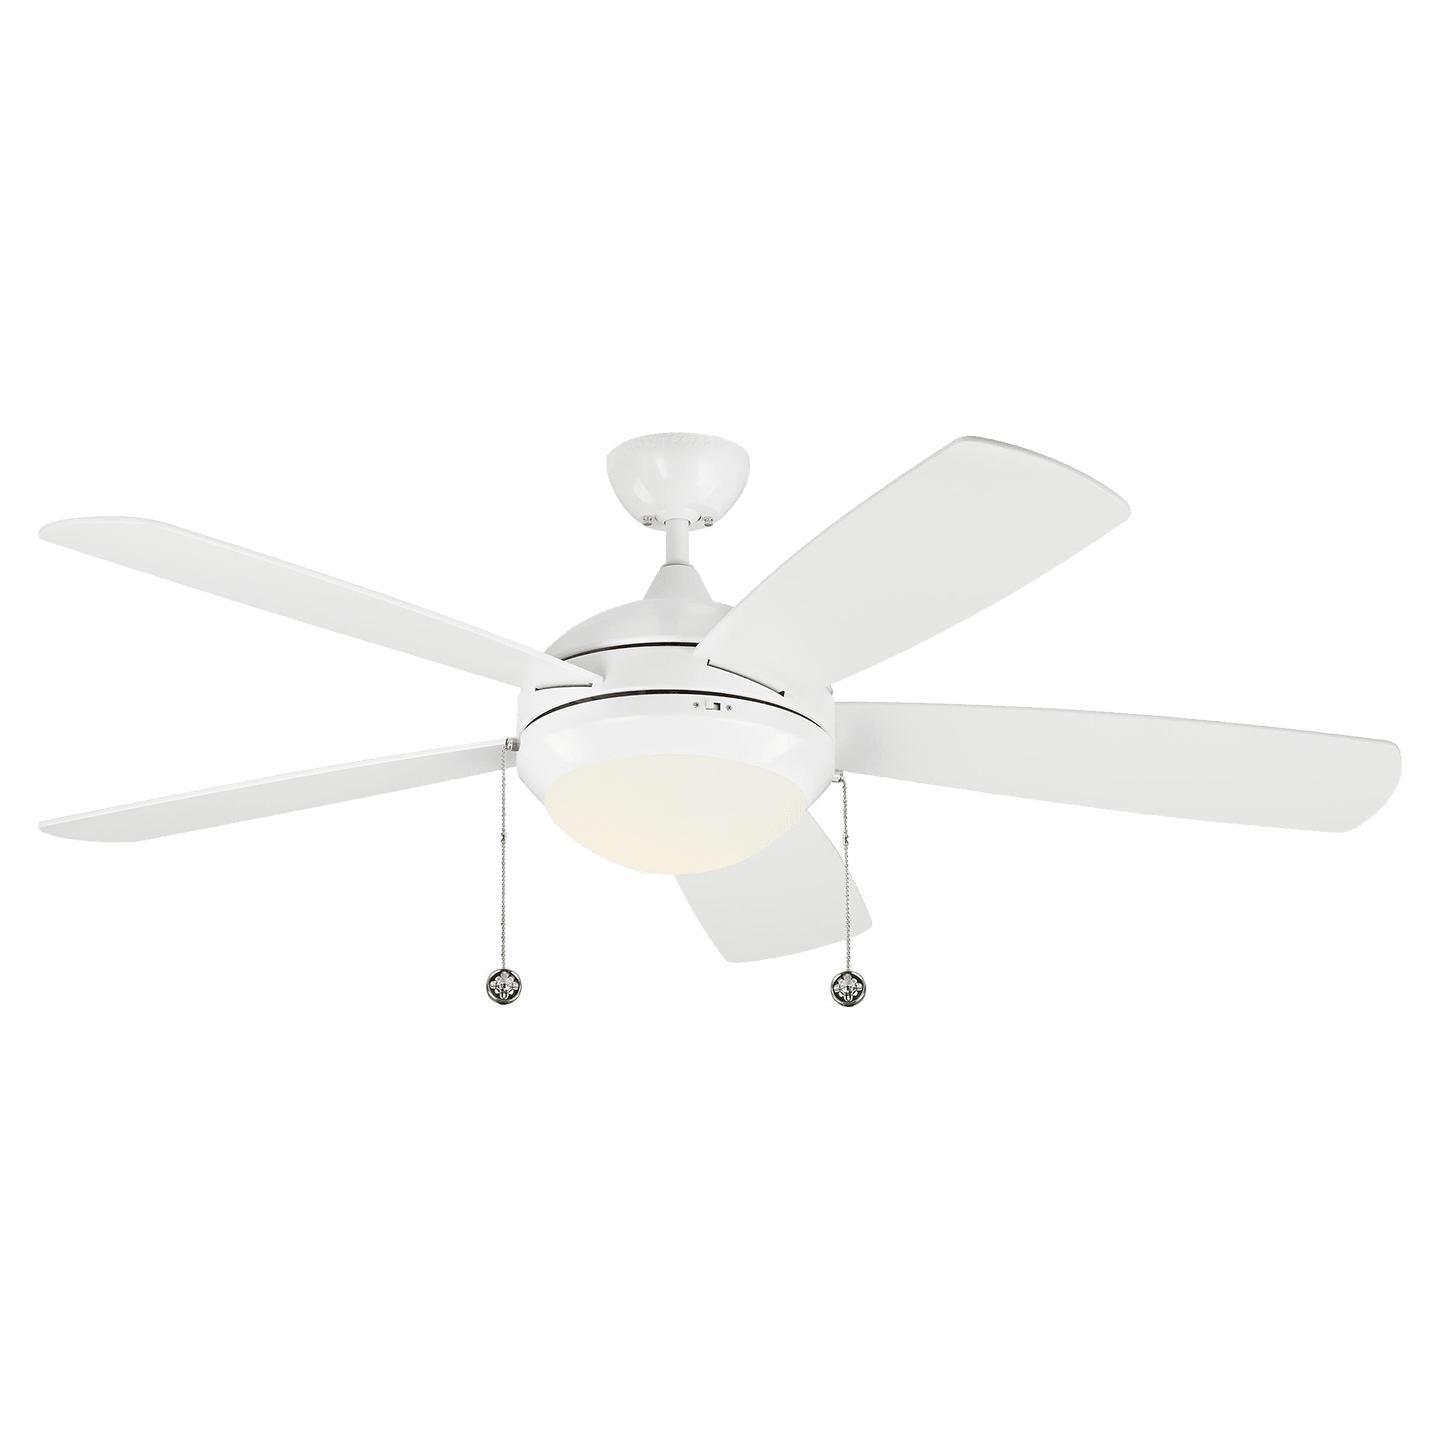 Купить Потолочный вентилятор Discus Classic 52" LED Ceiling Fan в интернет-магазине roooms.ru